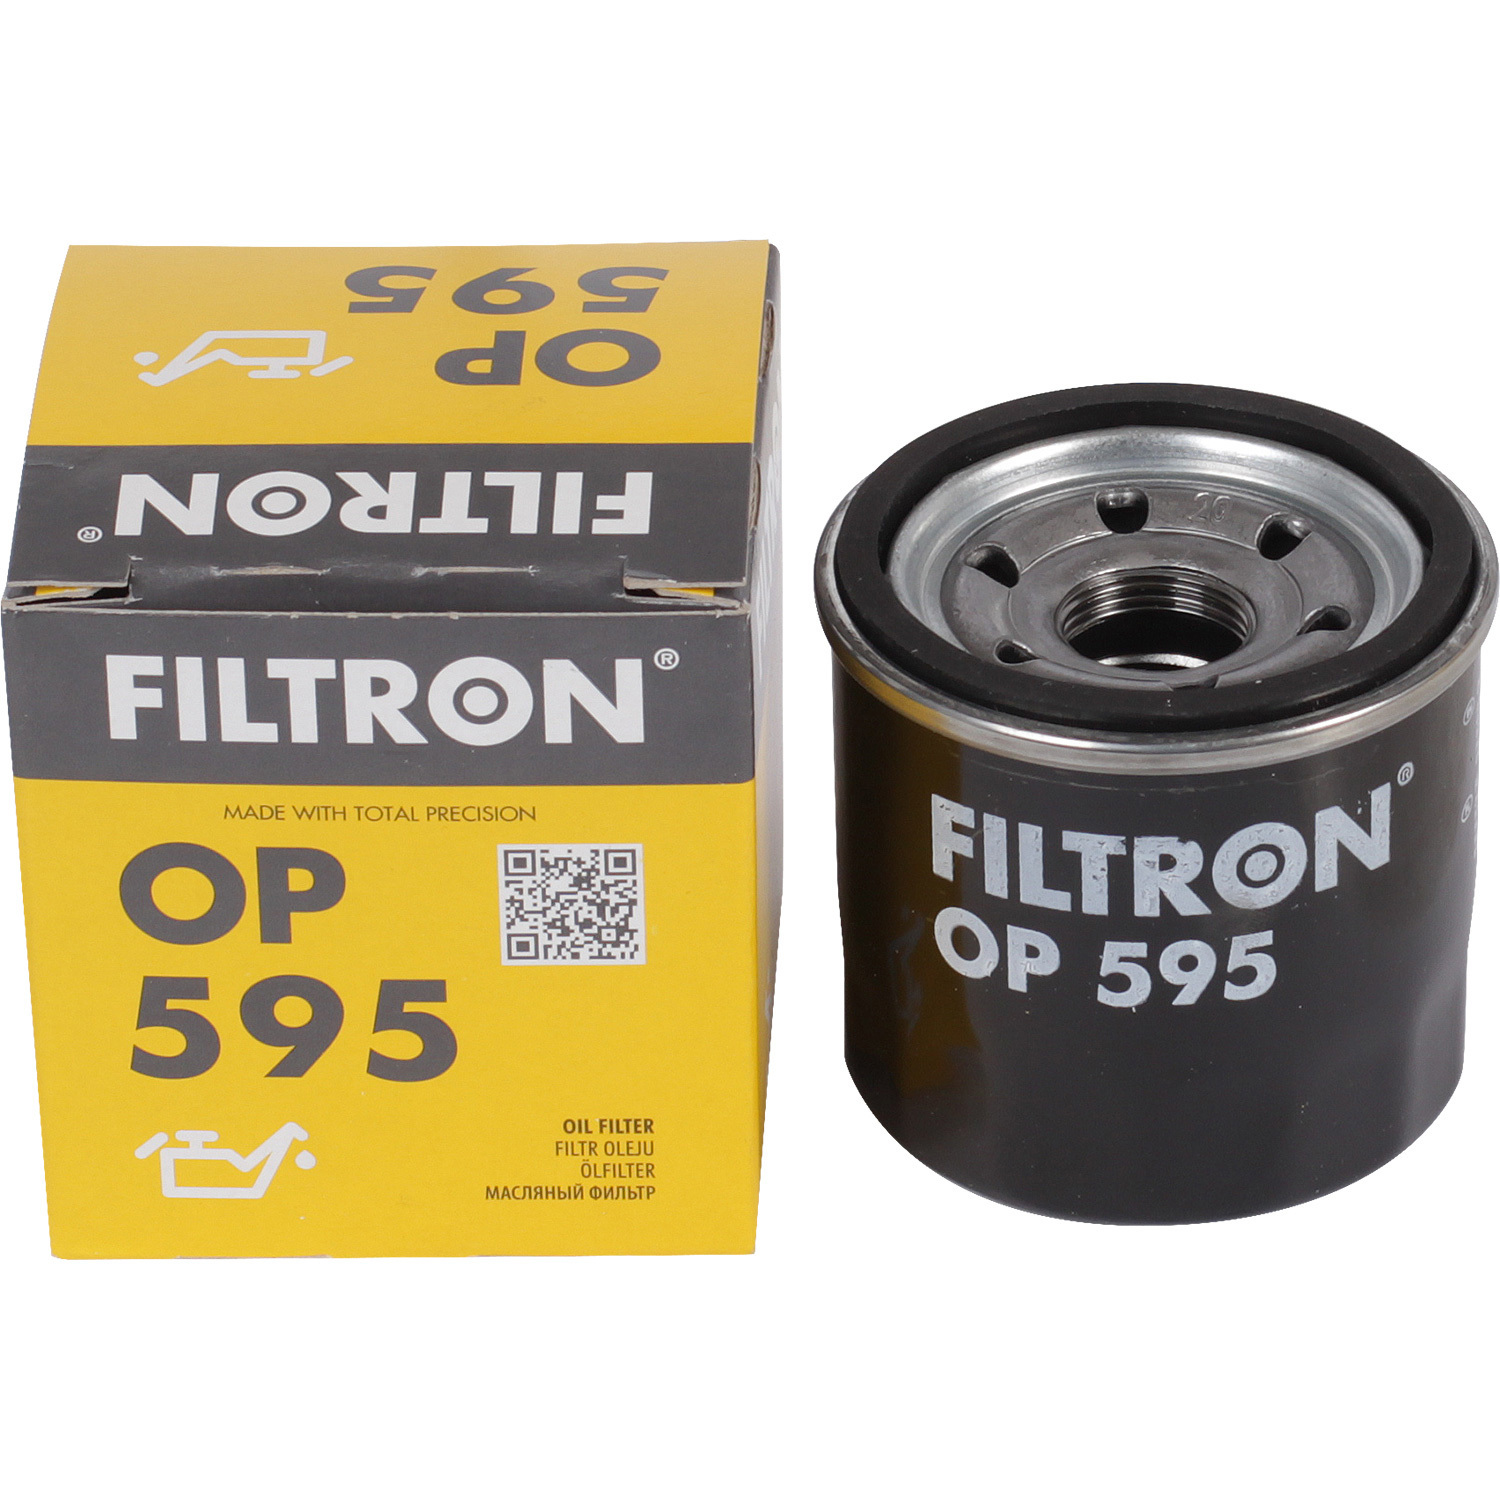 Фильтры Filtron Фильтр масляный Filtron OP595 фильтры filtron фильтр масляный filtron op641